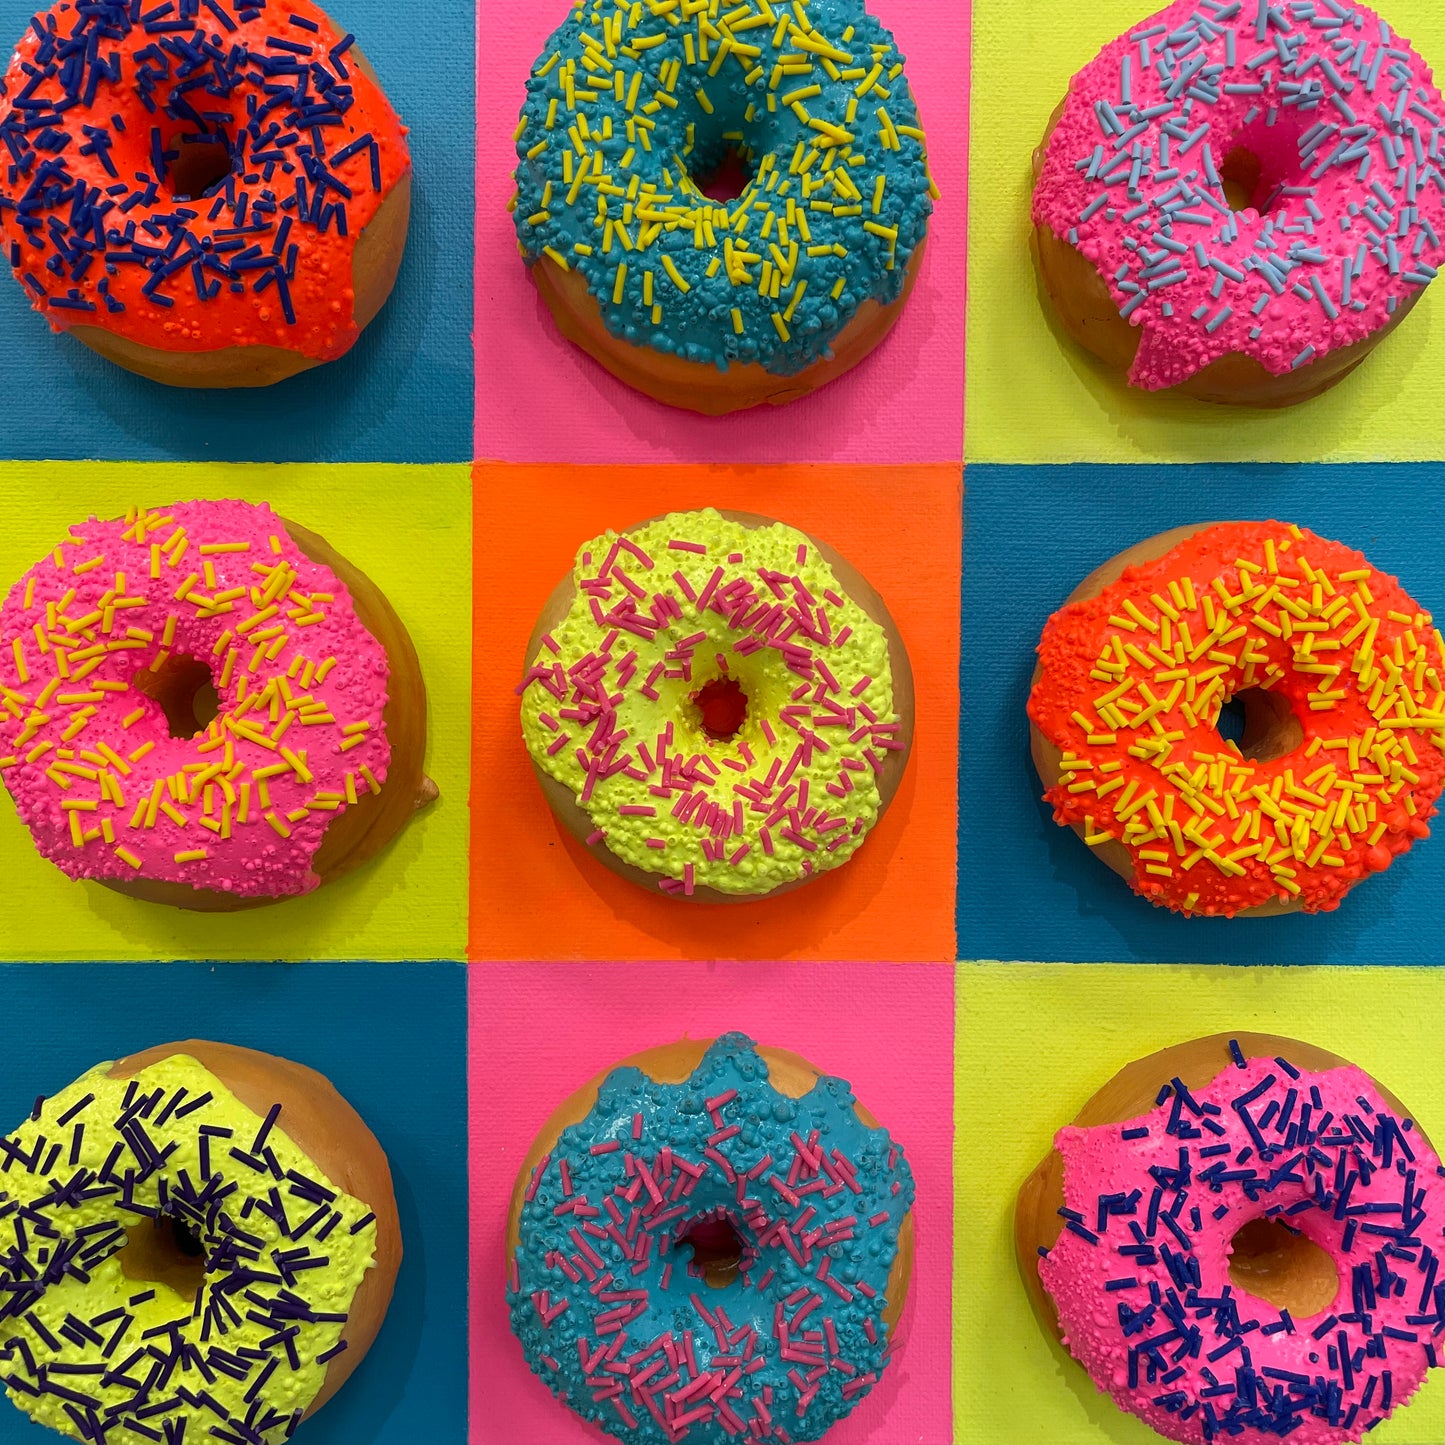 Donut Warhol by Courtney Mixed Studio